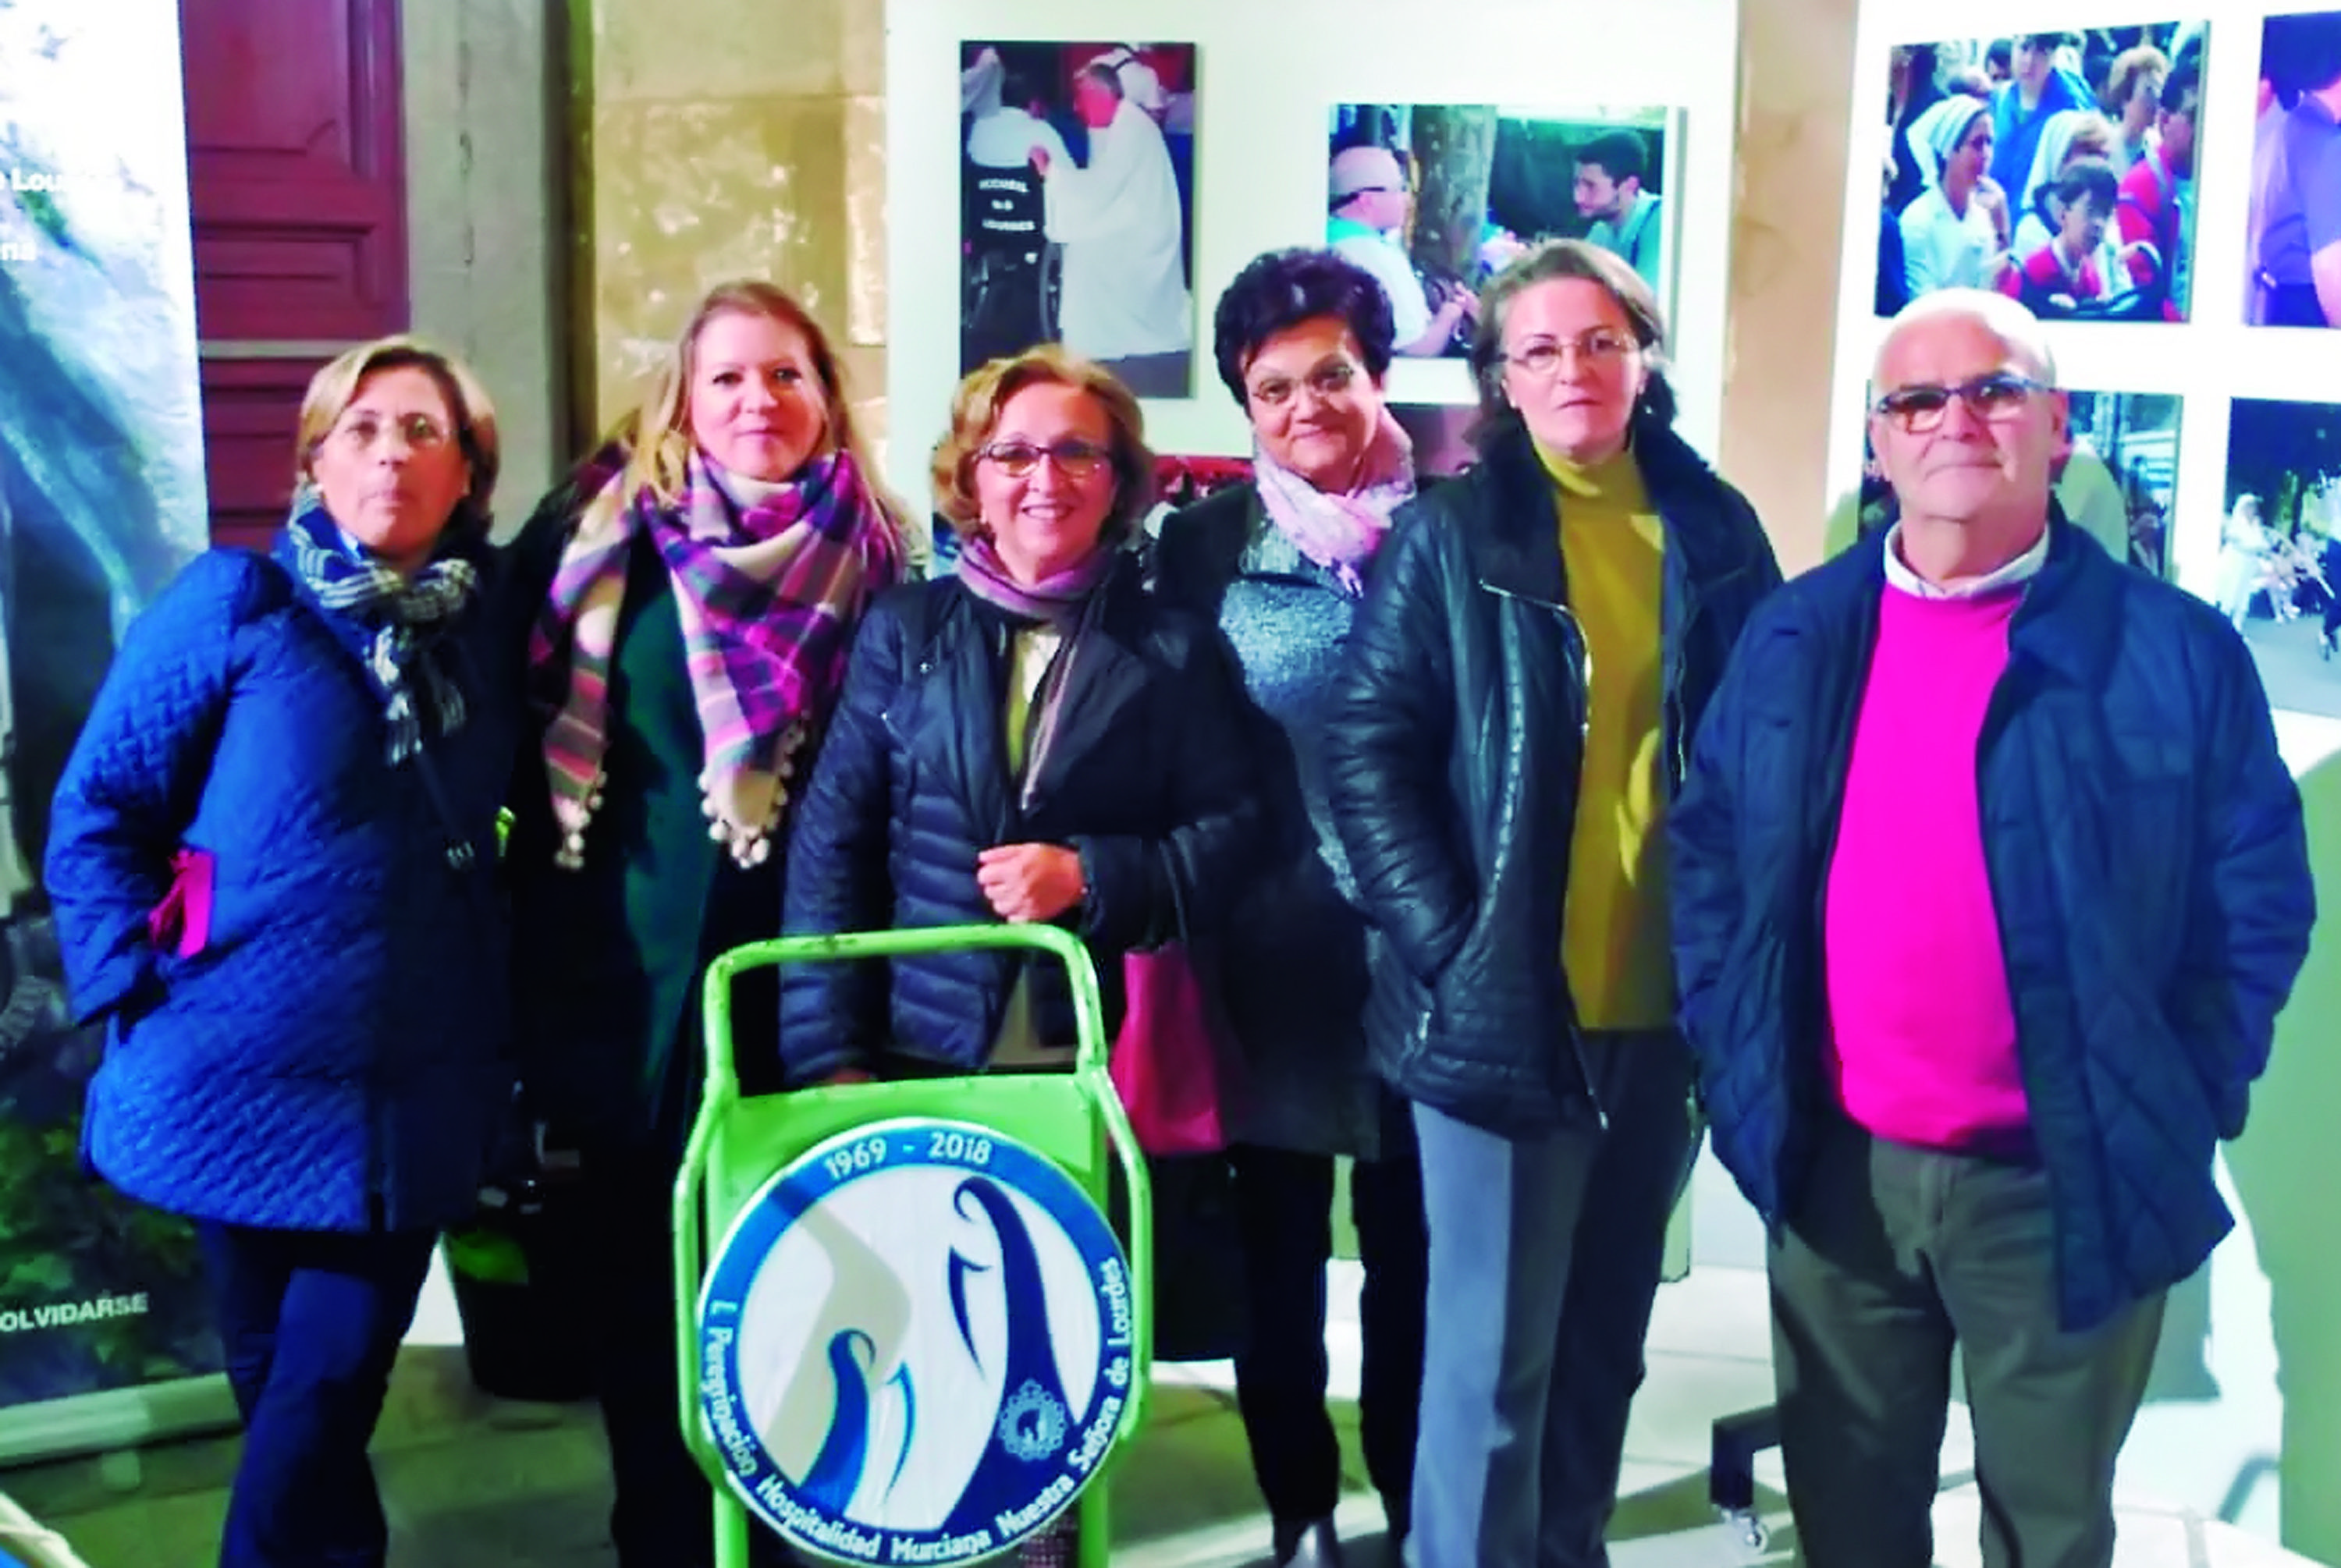 La delegación de Jumilla de la Hospitalidad de Lourdes estuvo en la clausura del Año Jubilar